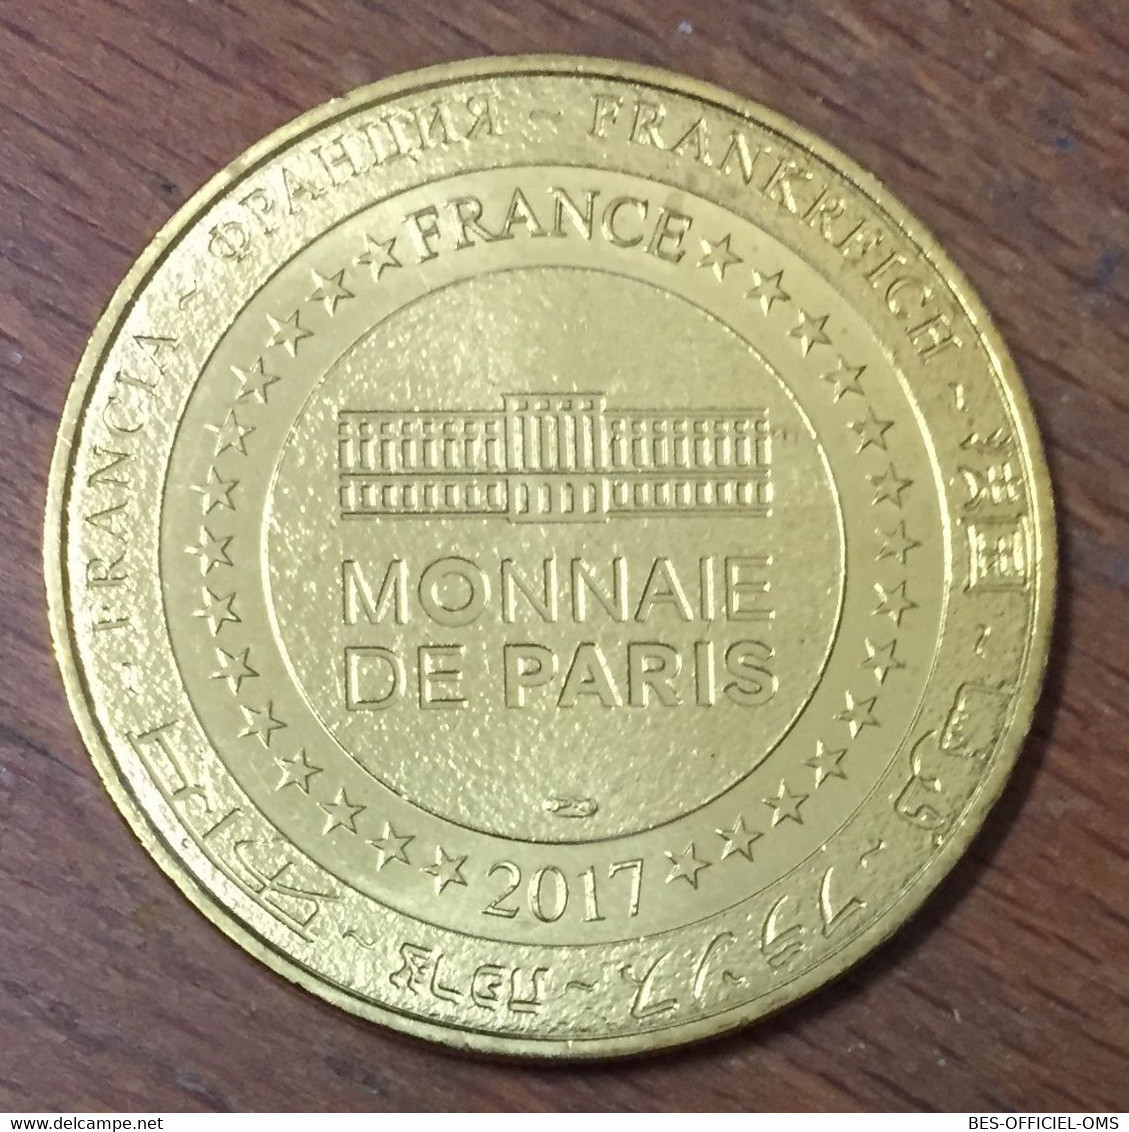 13 MARSEILLE BOUCHES DU RHÔNE MDP 2017 MINI MÉDAILLE SOUVENIR MONNAIE DE PARIS JETON TOURISTIQUE MEDALS TOKENS COINS - 2017